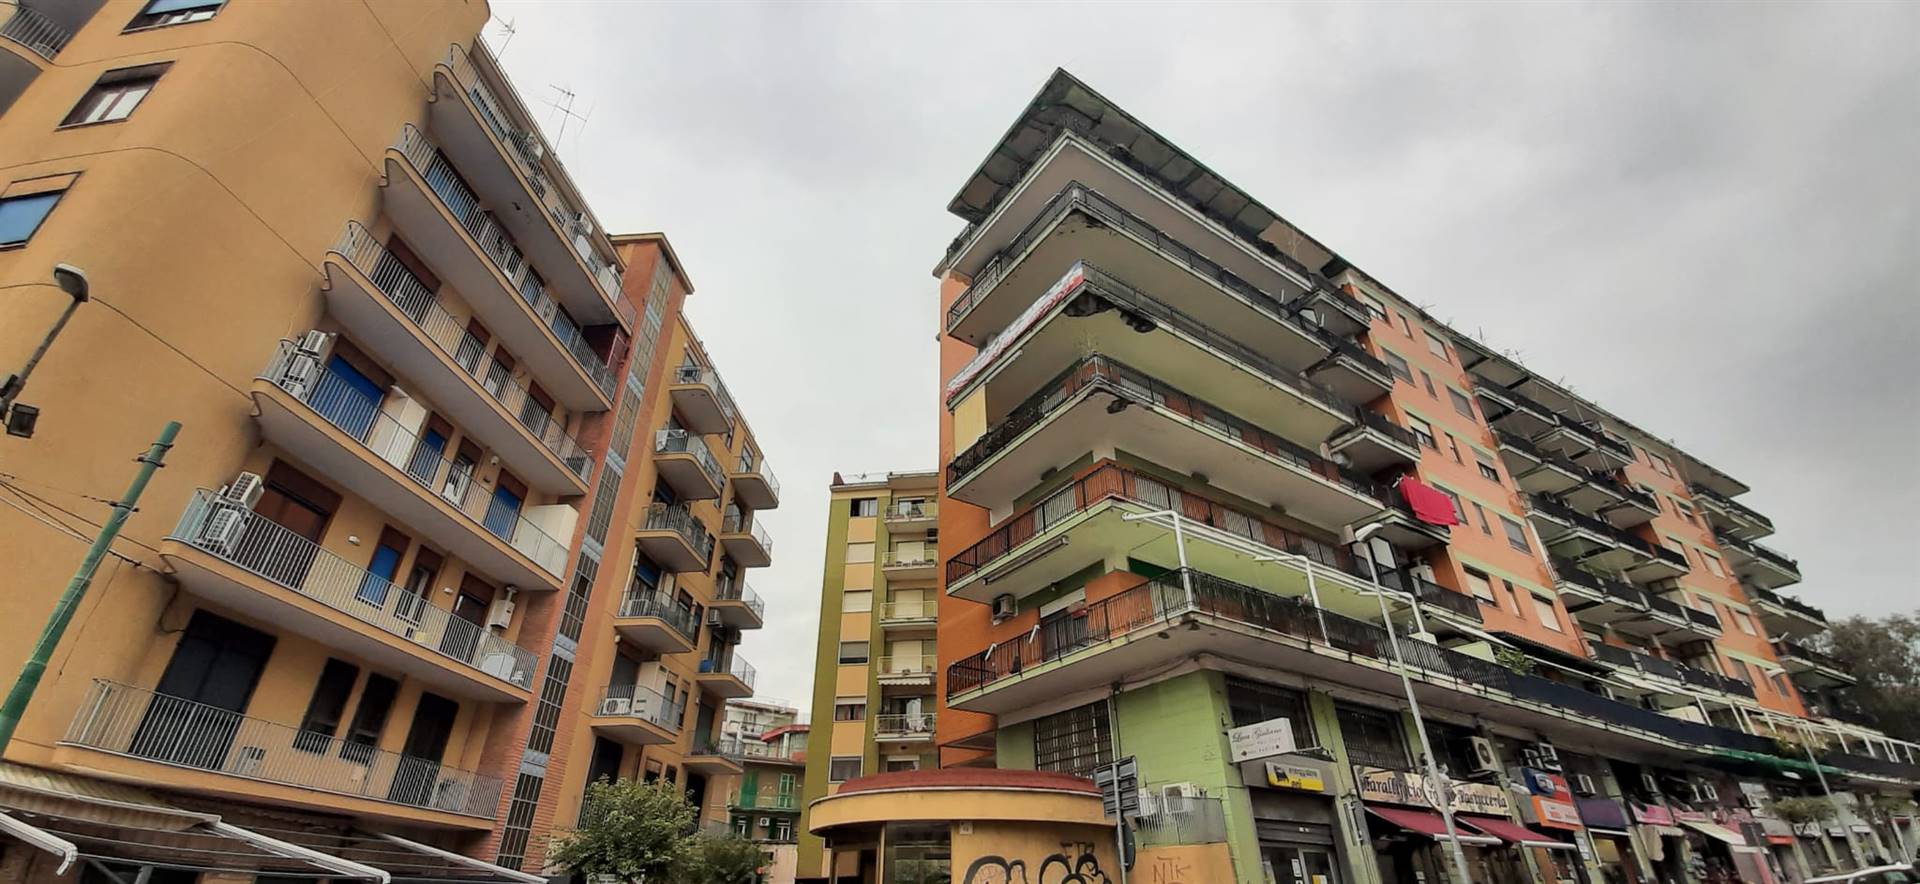 Appartamento in vendita a San Giorgio a Cremano, 2 locali, zona Località: CENTRO VESUVIANA, prezzo € 85.000 | CambioCasa.it